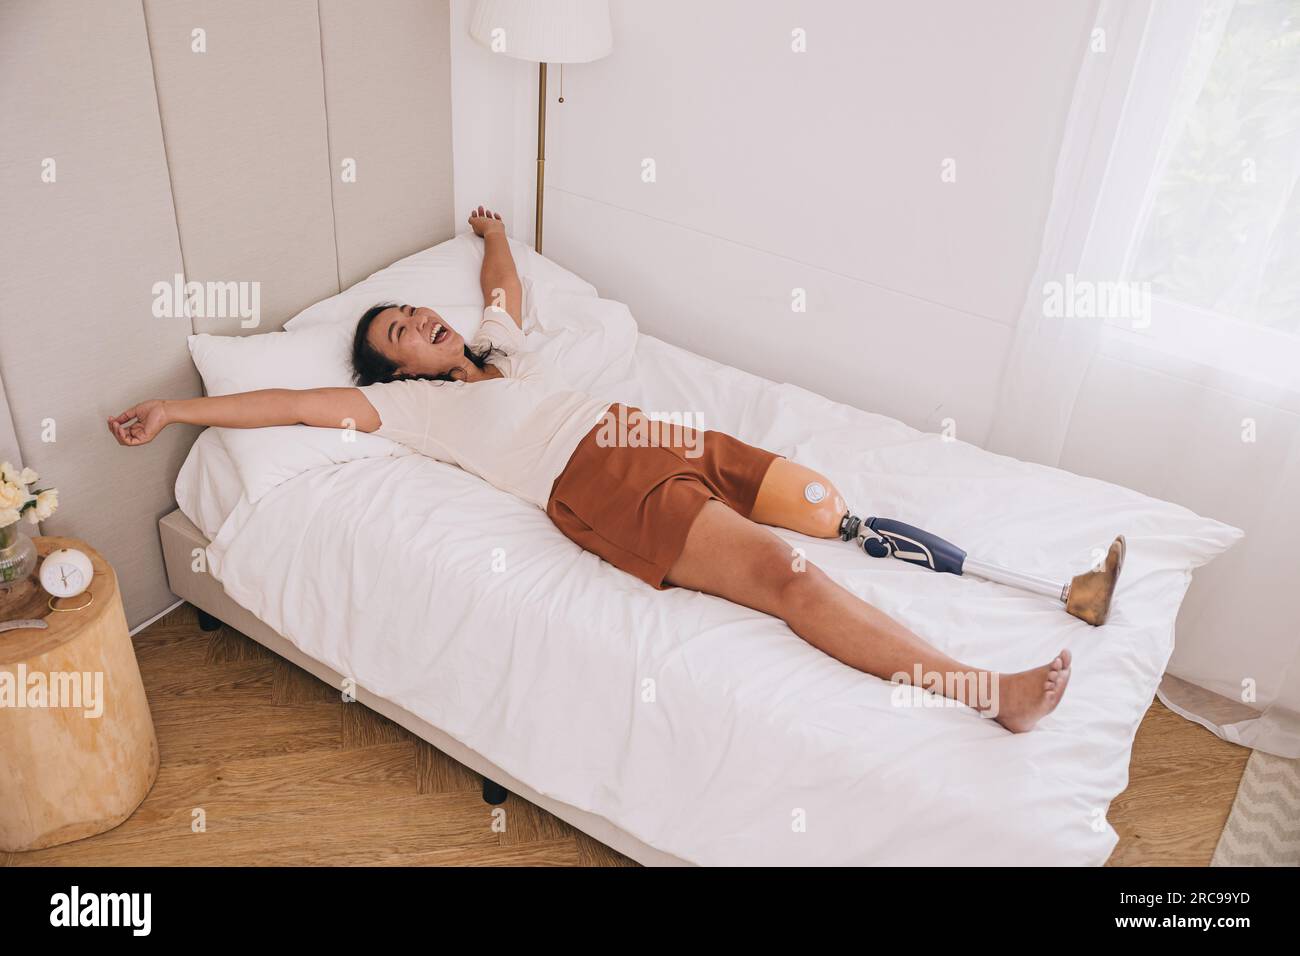 Protesi donna felice gamba bionica svegliarsi al mattino in casa adorabile letto spensierato forte sano buon mentale Foto Stock